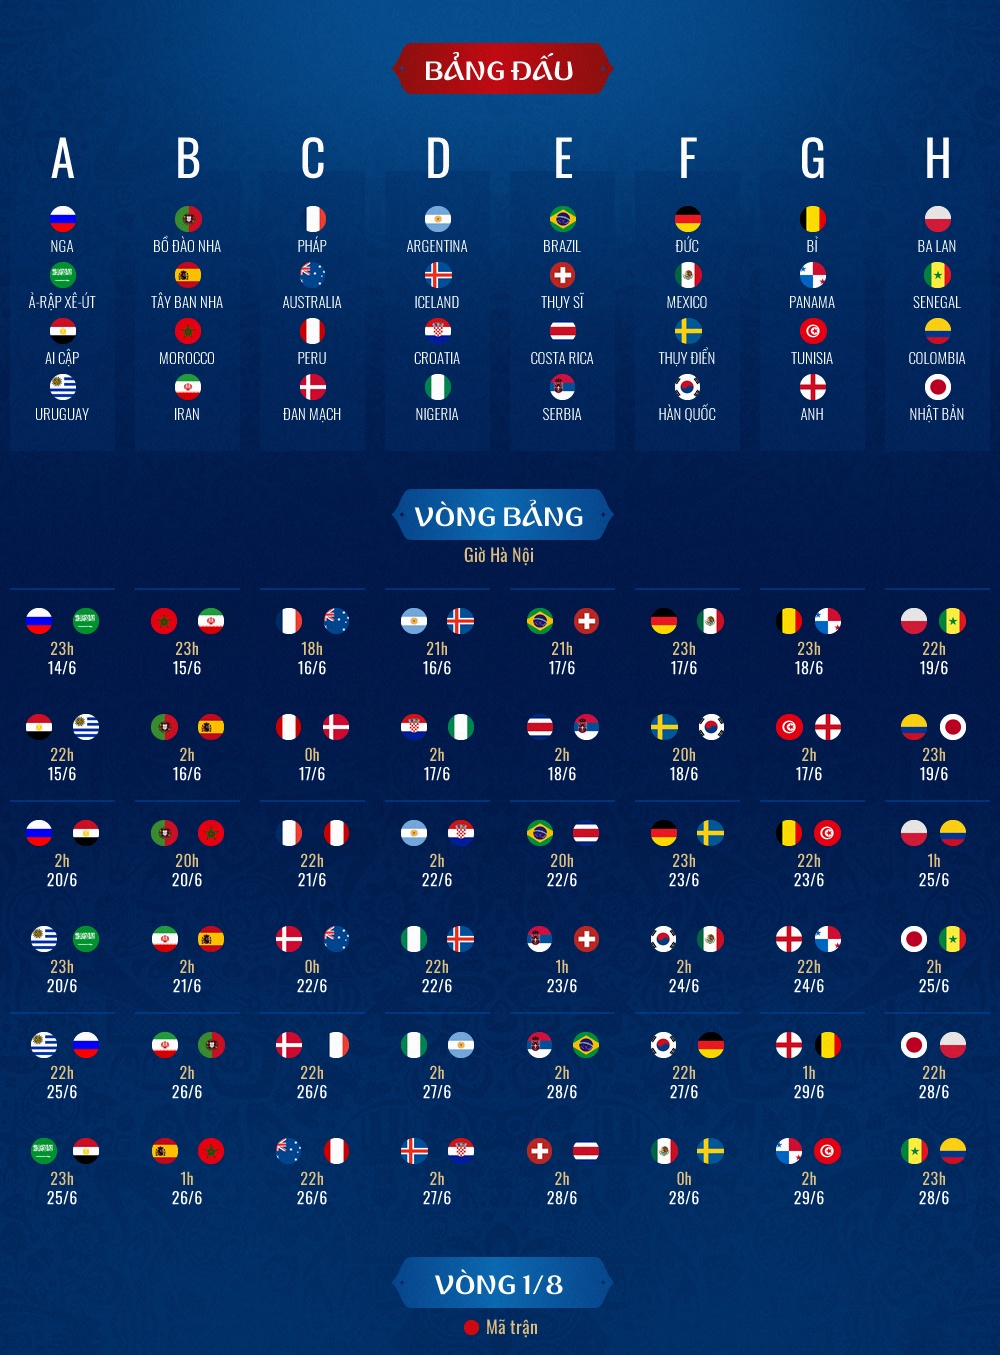 Hành trình thi đấu ở World Cup 2018